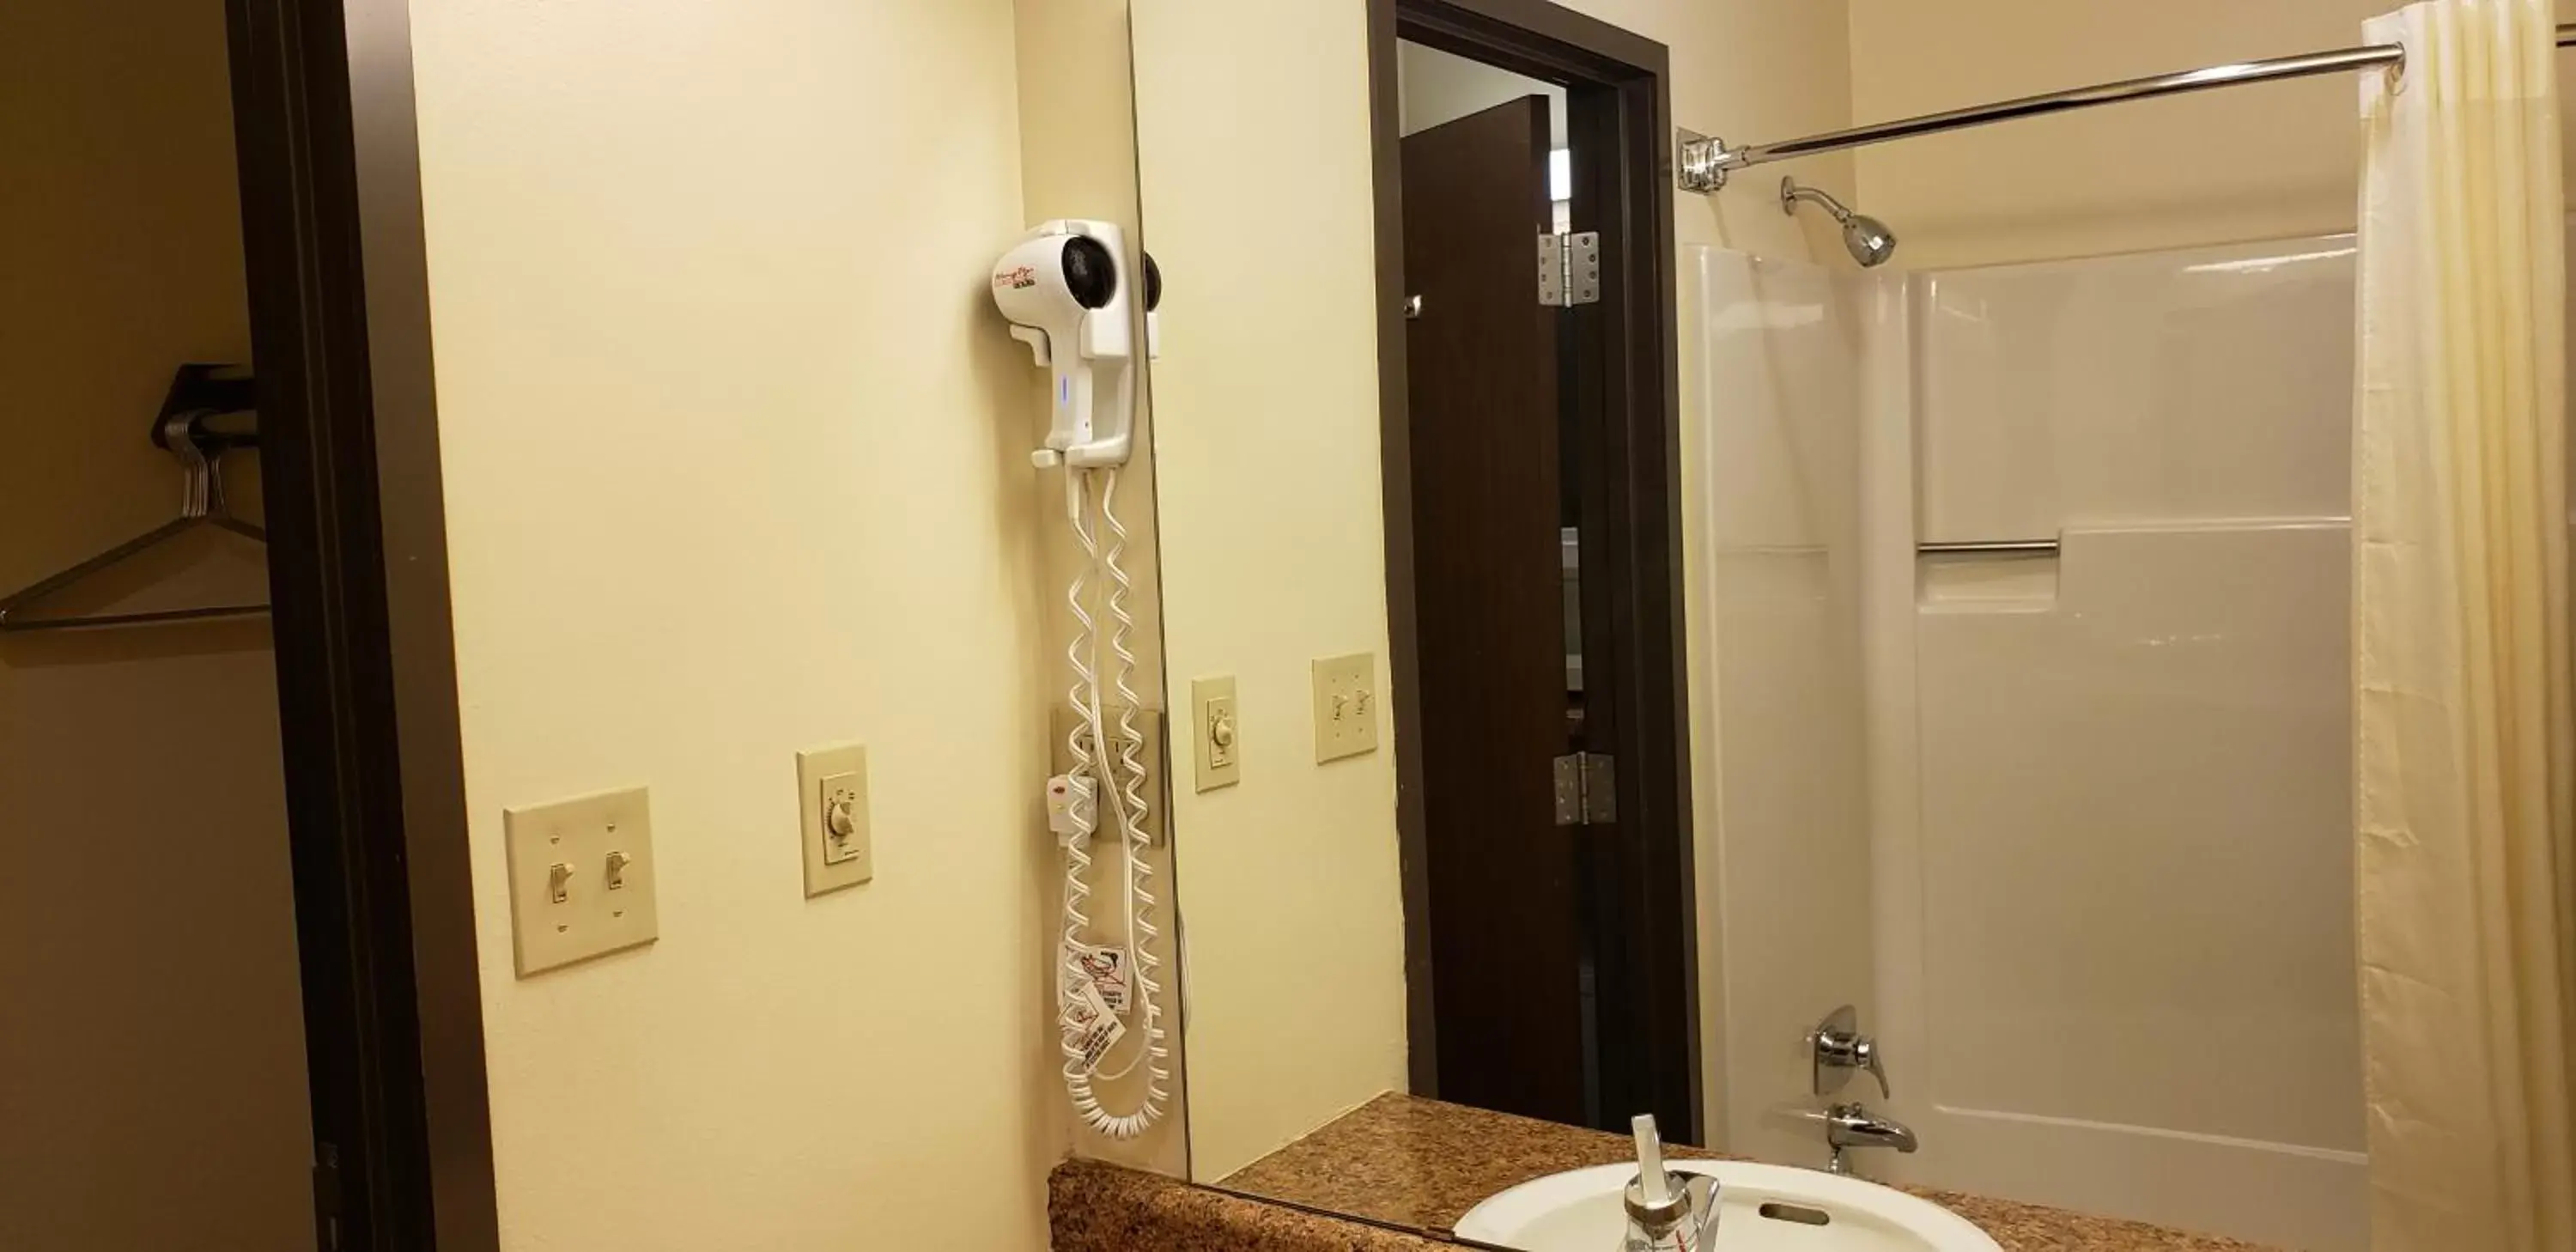 Bathroom in Family Budget Inn